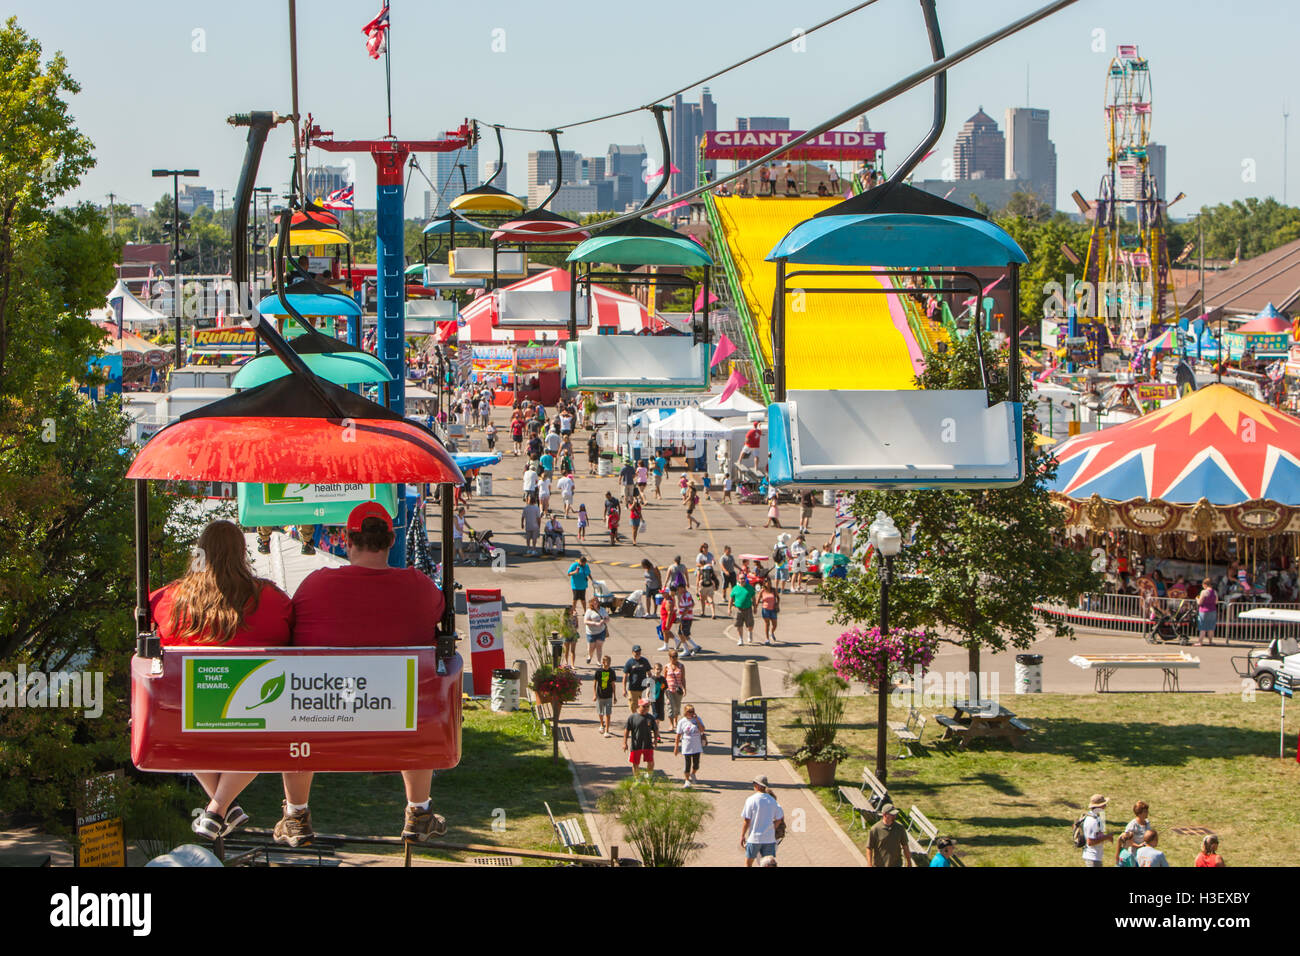 Die Menschen genießen Attraktionen und Fahrgeschäfte auf der Midway von der Ohio State Fair, mit der Skyline im Hintergrund in Columbus, Ohio. Stockfoto